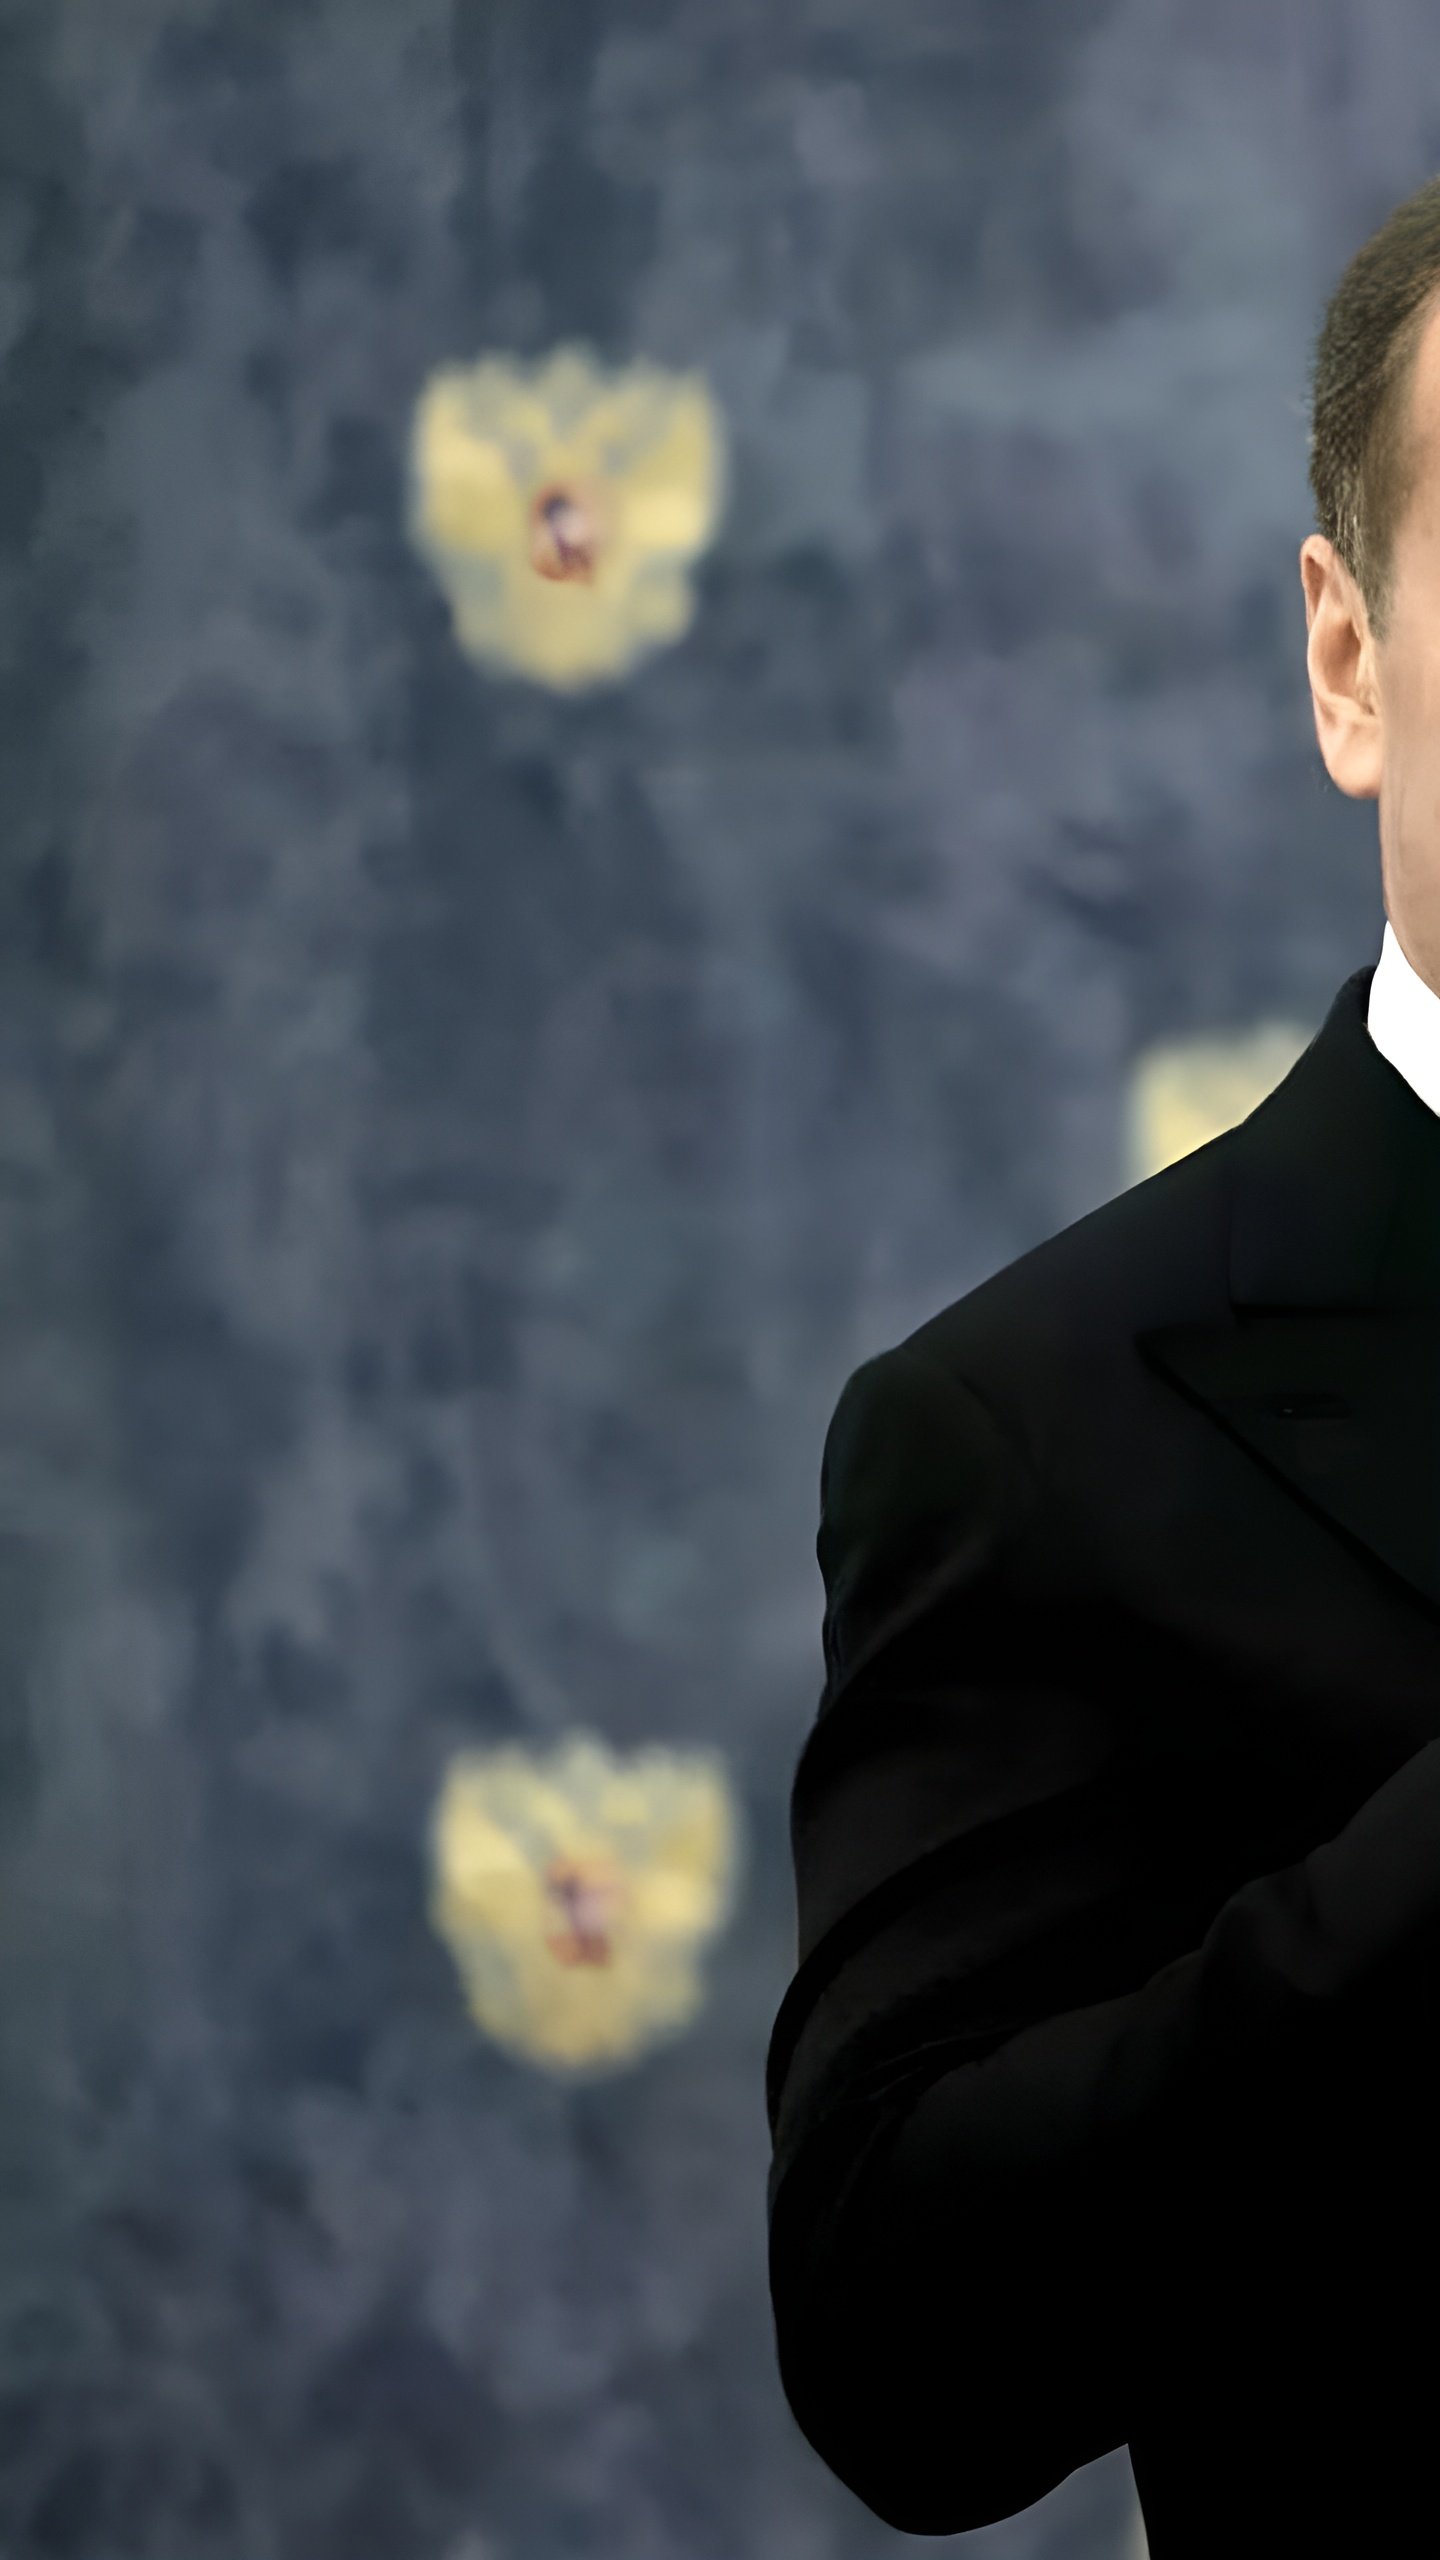 Дмитрий Медведев видит параллели между Днем независимости США и противостоянием России с Украиной